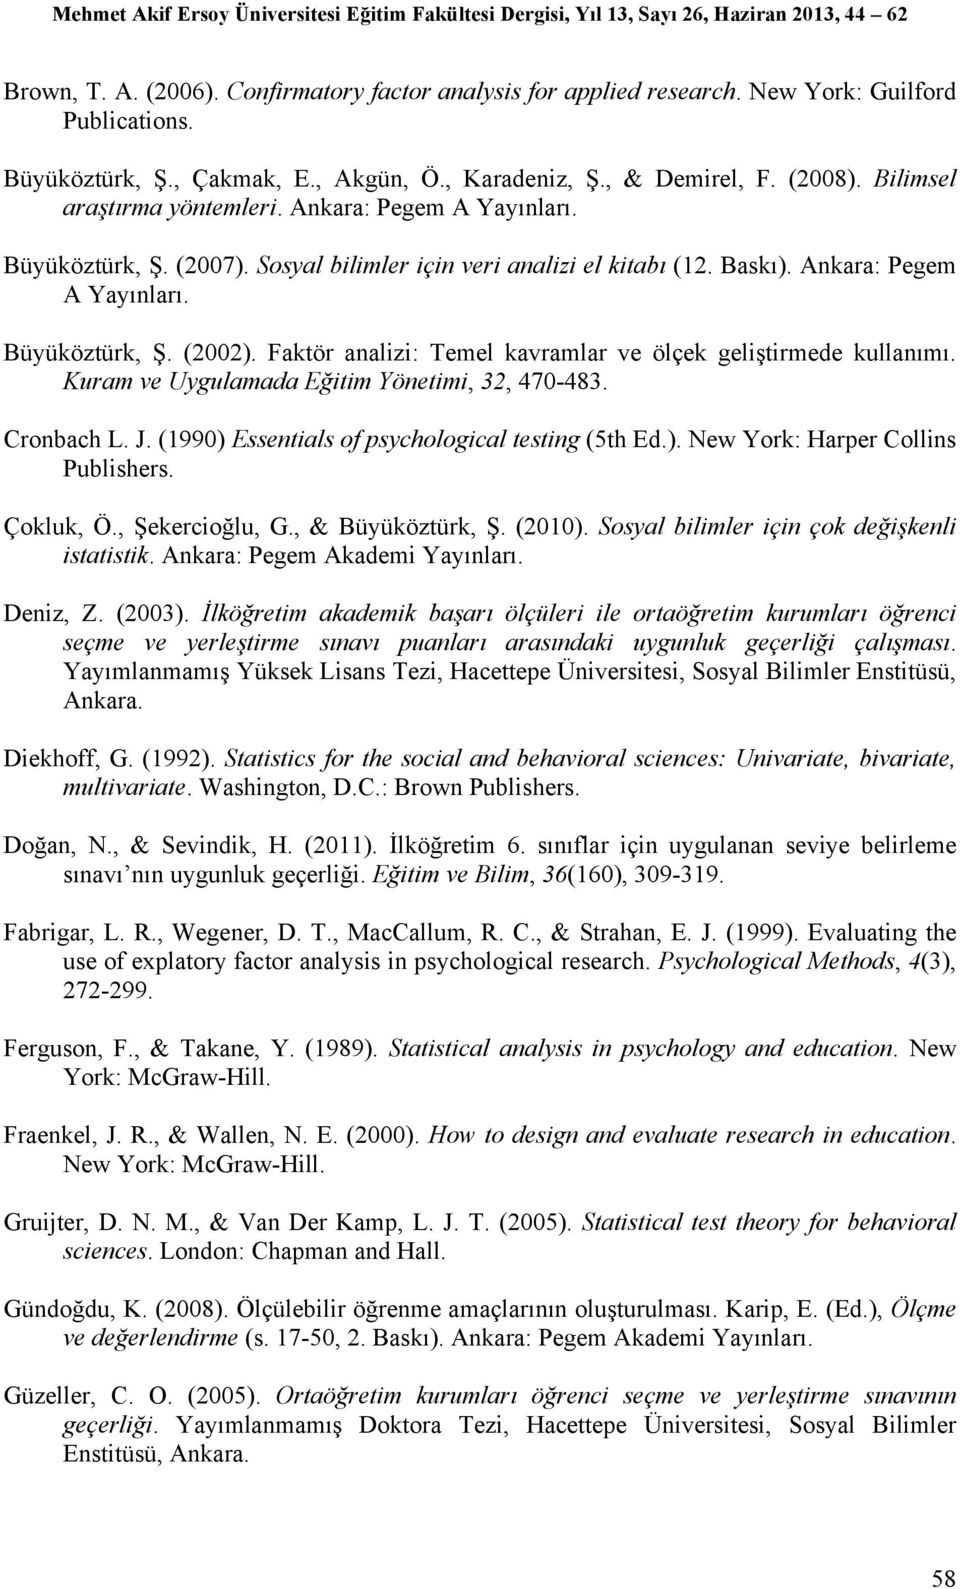 Faktör analizi: Temel kavramlar ve ölçek geliştirmede kullanımı. Kuram ve Uygulamada Eğitim Yönetimi, 32, 470-483. Cronbach L. J. (1990) Essentials of psychological testing (5th Ed.). New York: Harper Collins Publishers.